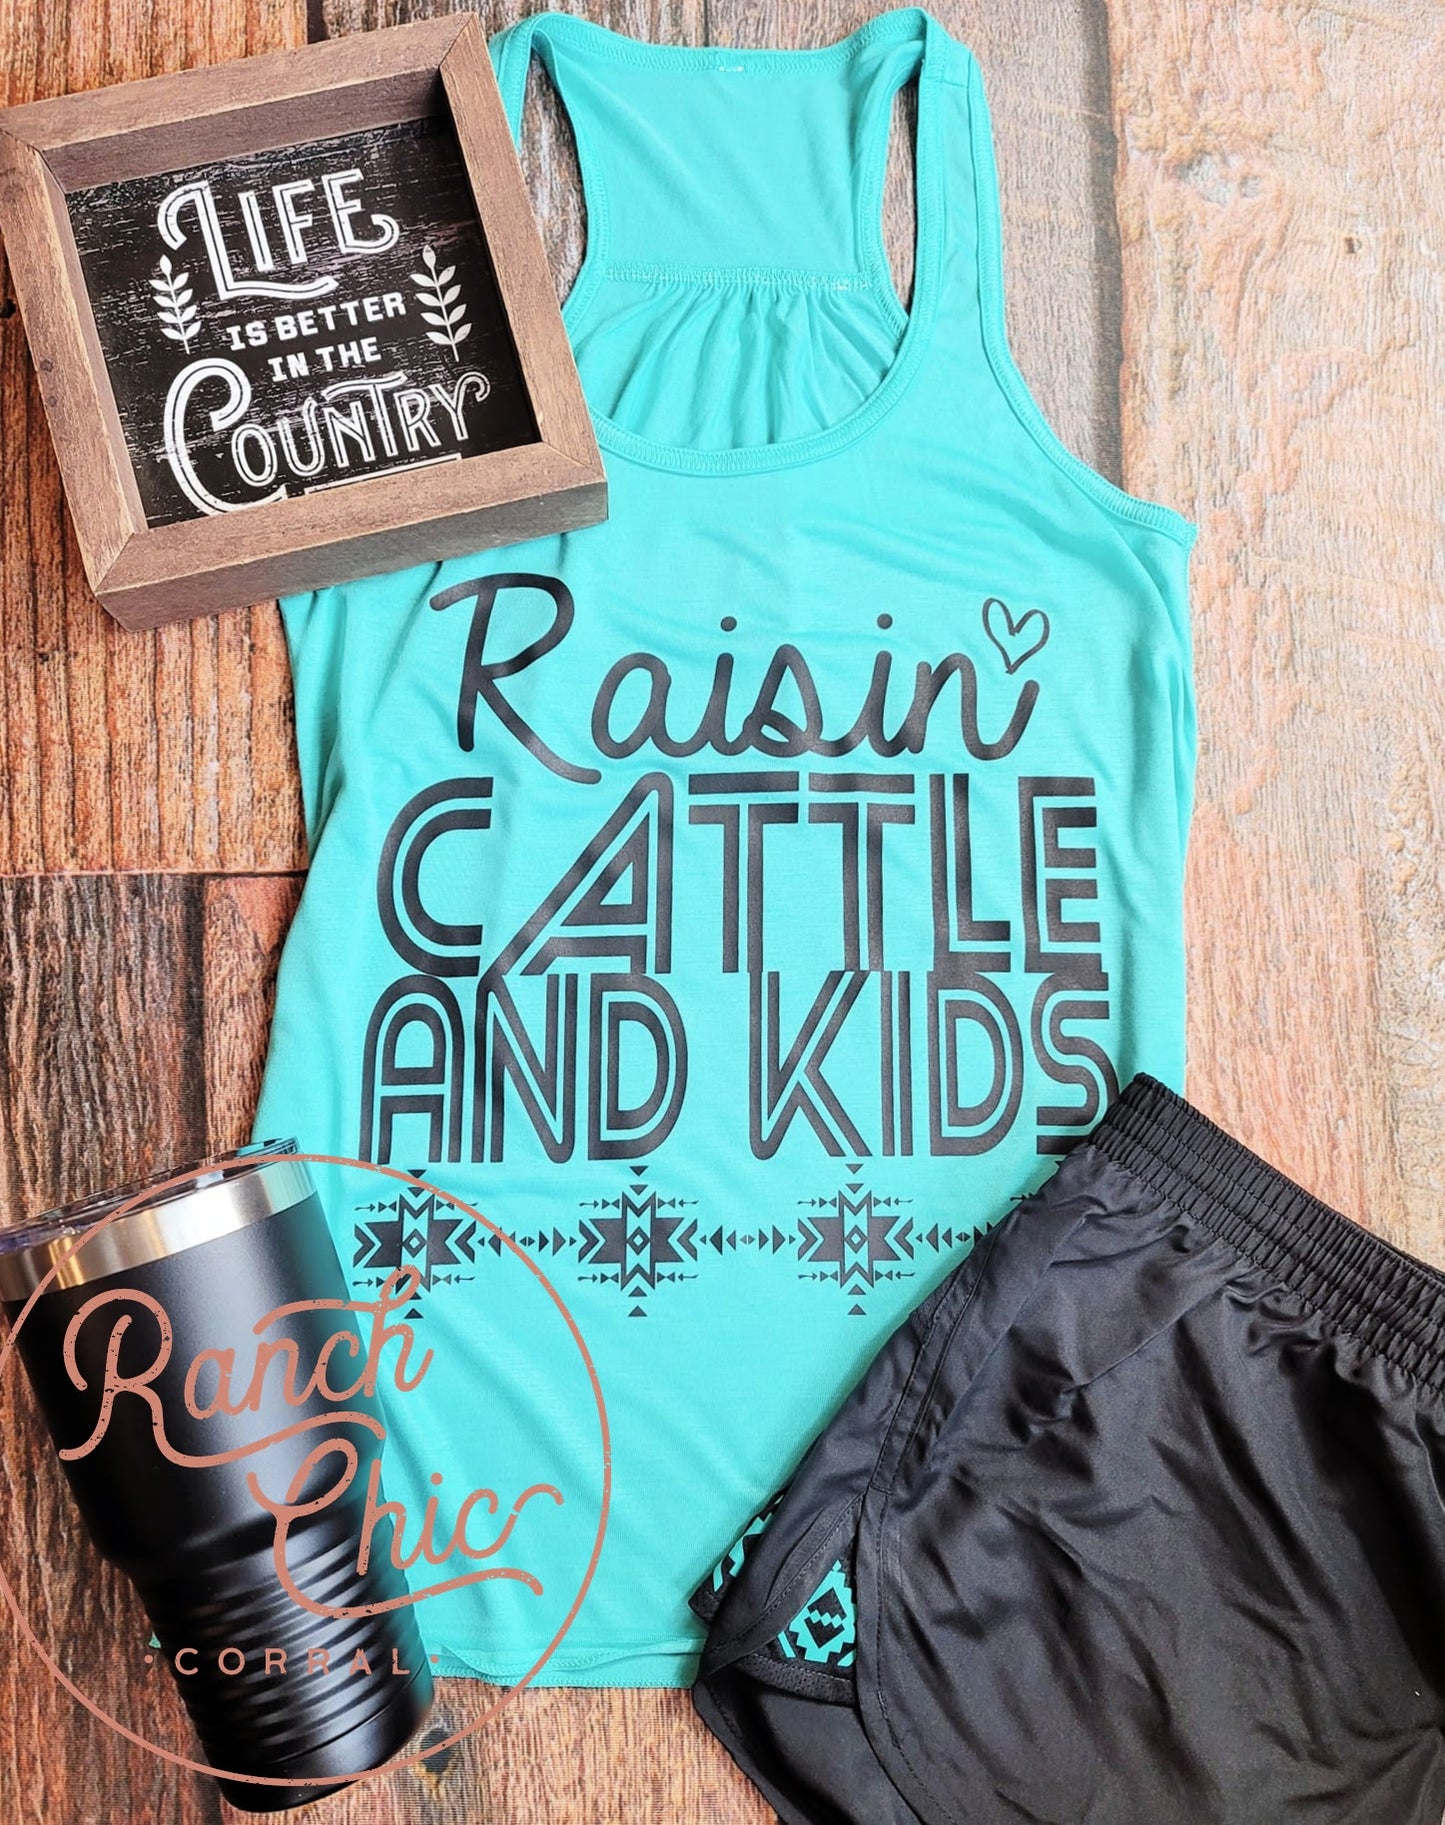 Raisin Cattle & Kids Activewear